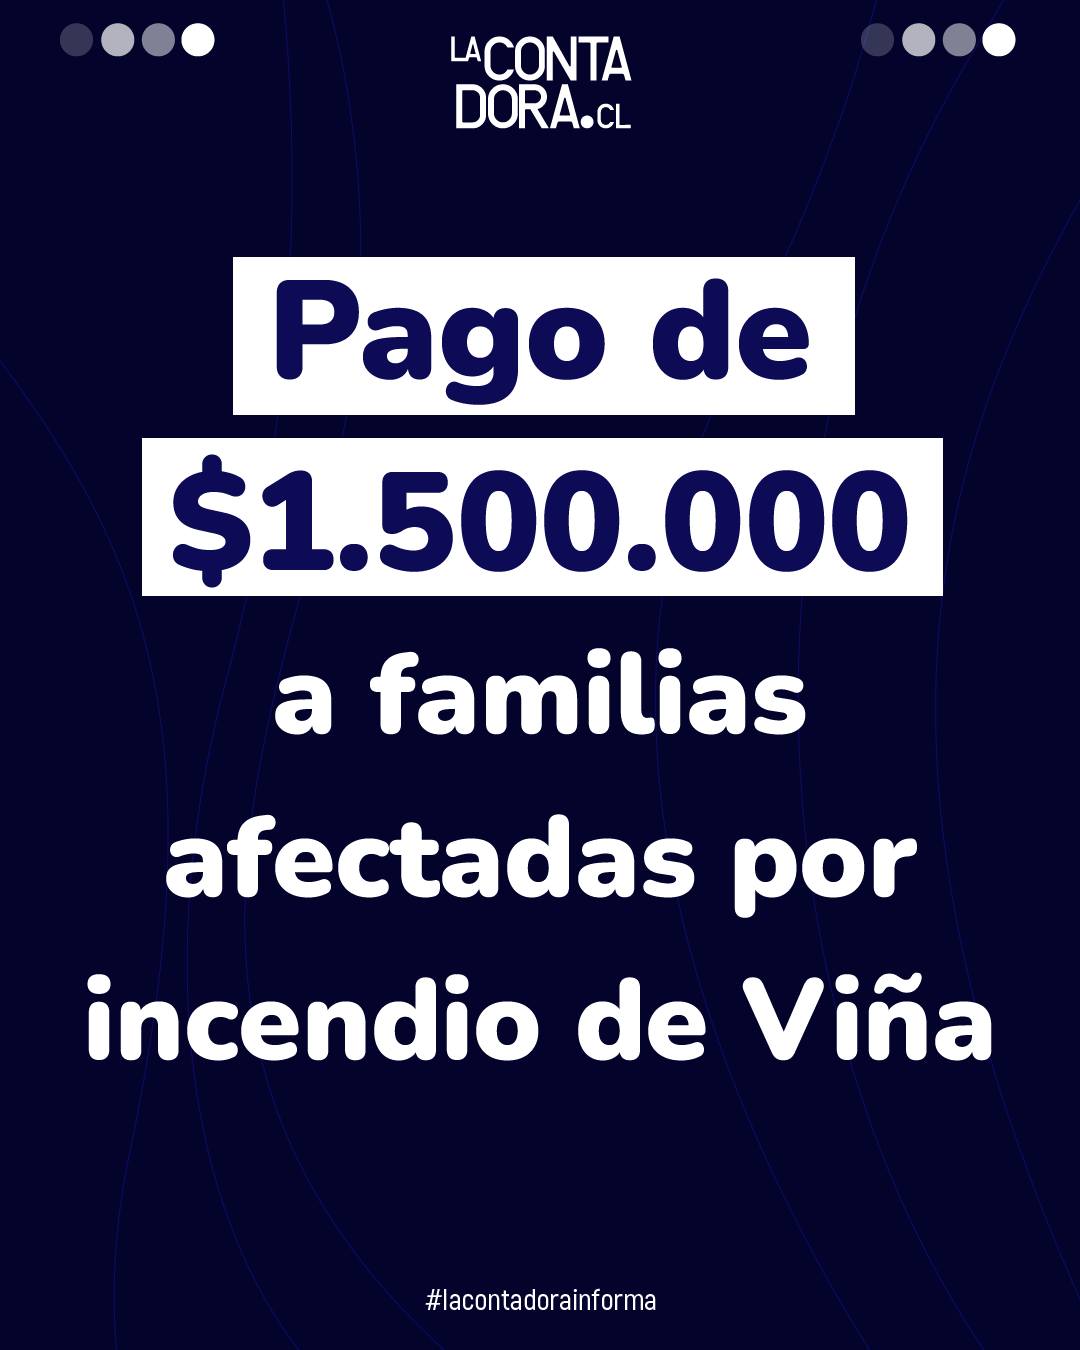 PAGO DE $1.500.000 A FAMILIAS AFECTADAS POR INCENDIO DE VIÑA